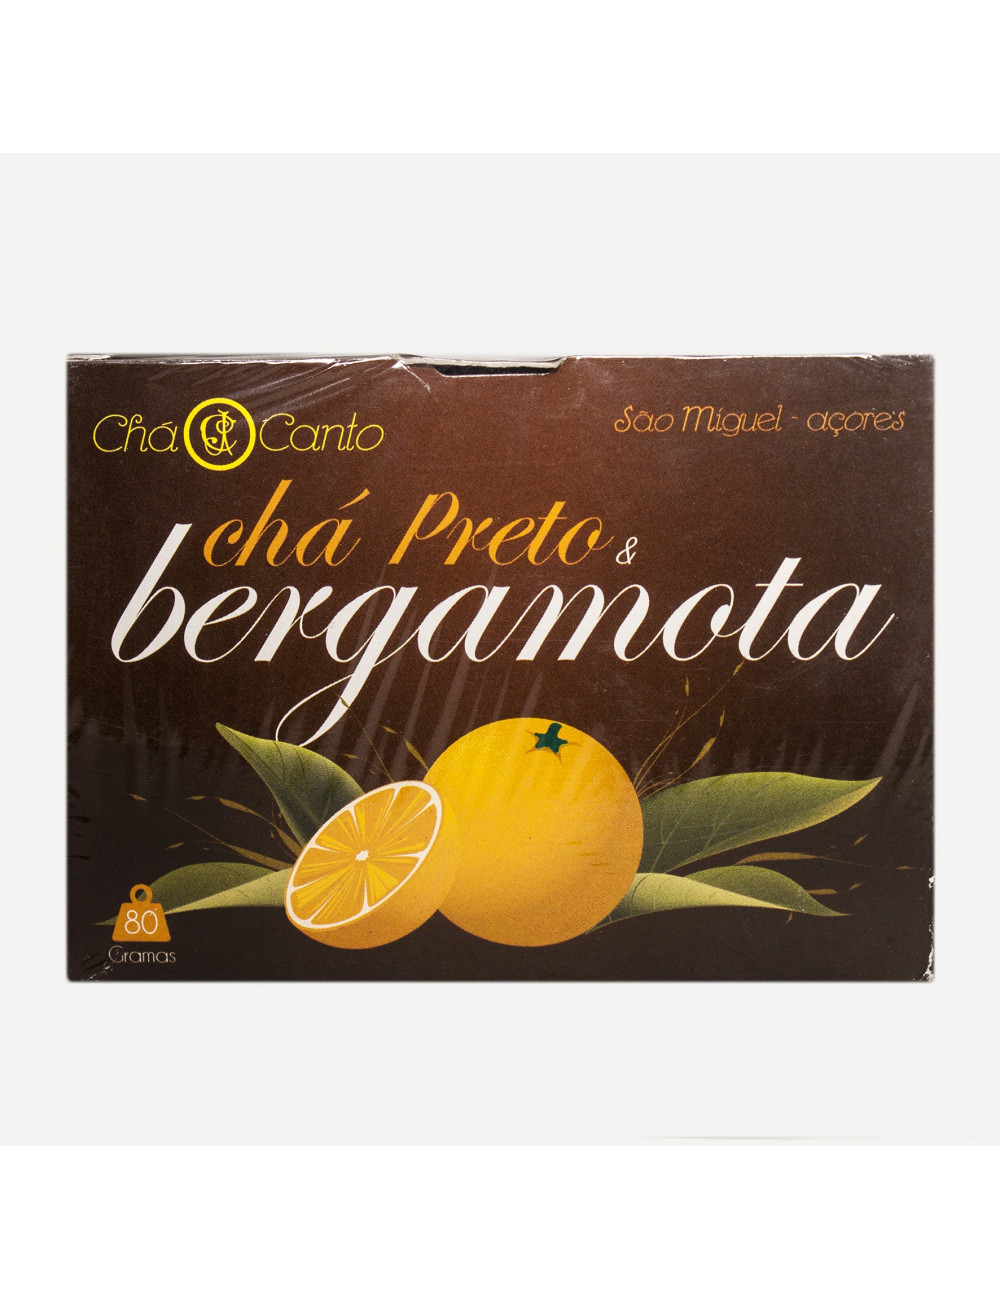 Pekoe Black Tea & Bergamota